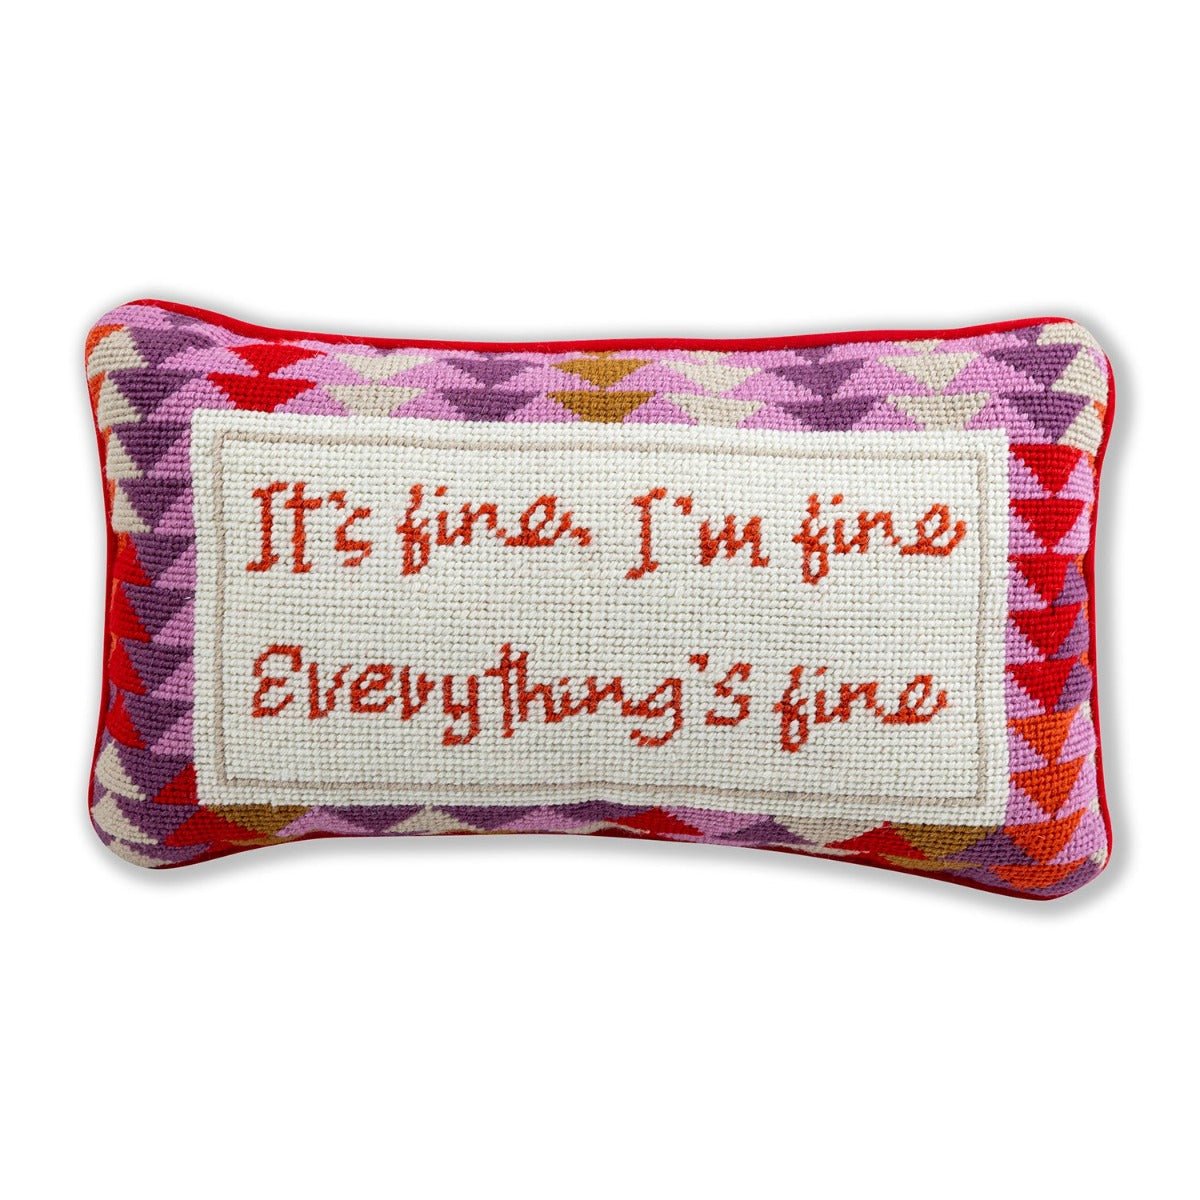 Everything's Fine Needlepoint Pillow - Throw Pillows - Furbish Studio - The Grove